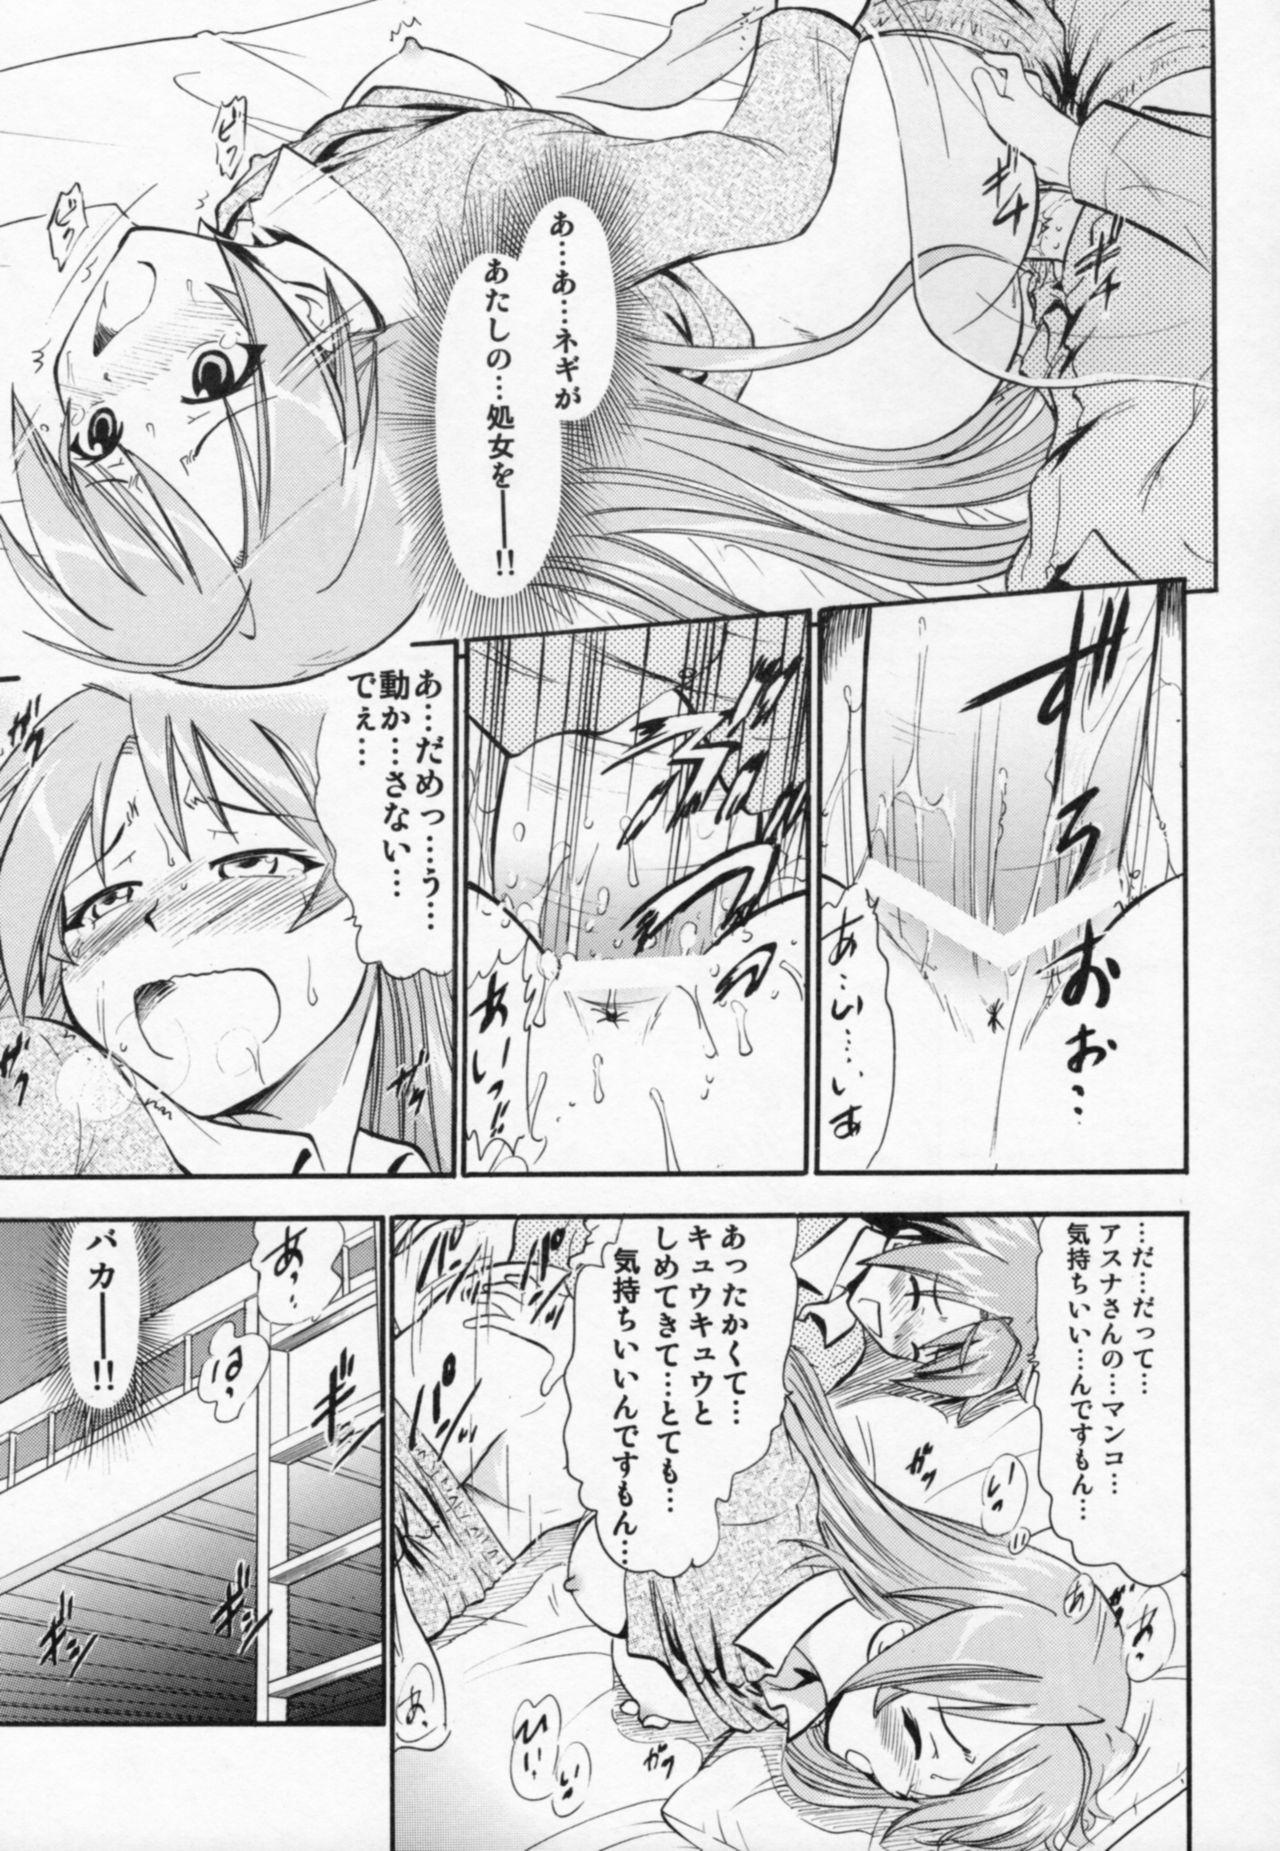  Etsuraku no Asuna - Mahou sensei negima Blackcock - Page 10